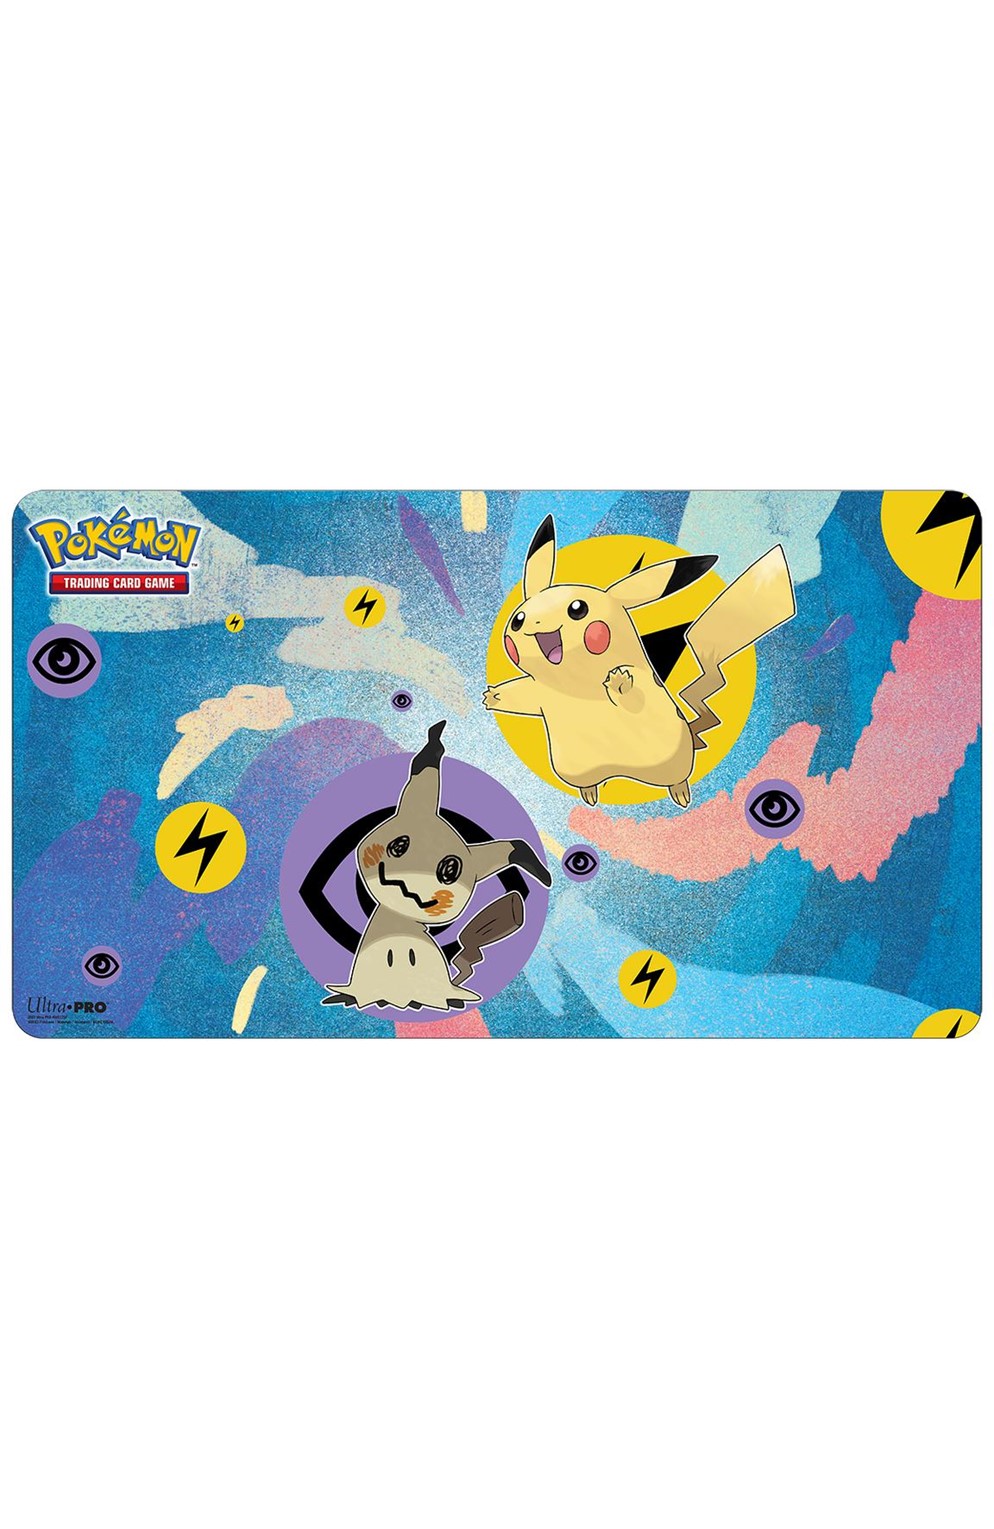 Pokemon: Pikachu & Mimikyu Playmat